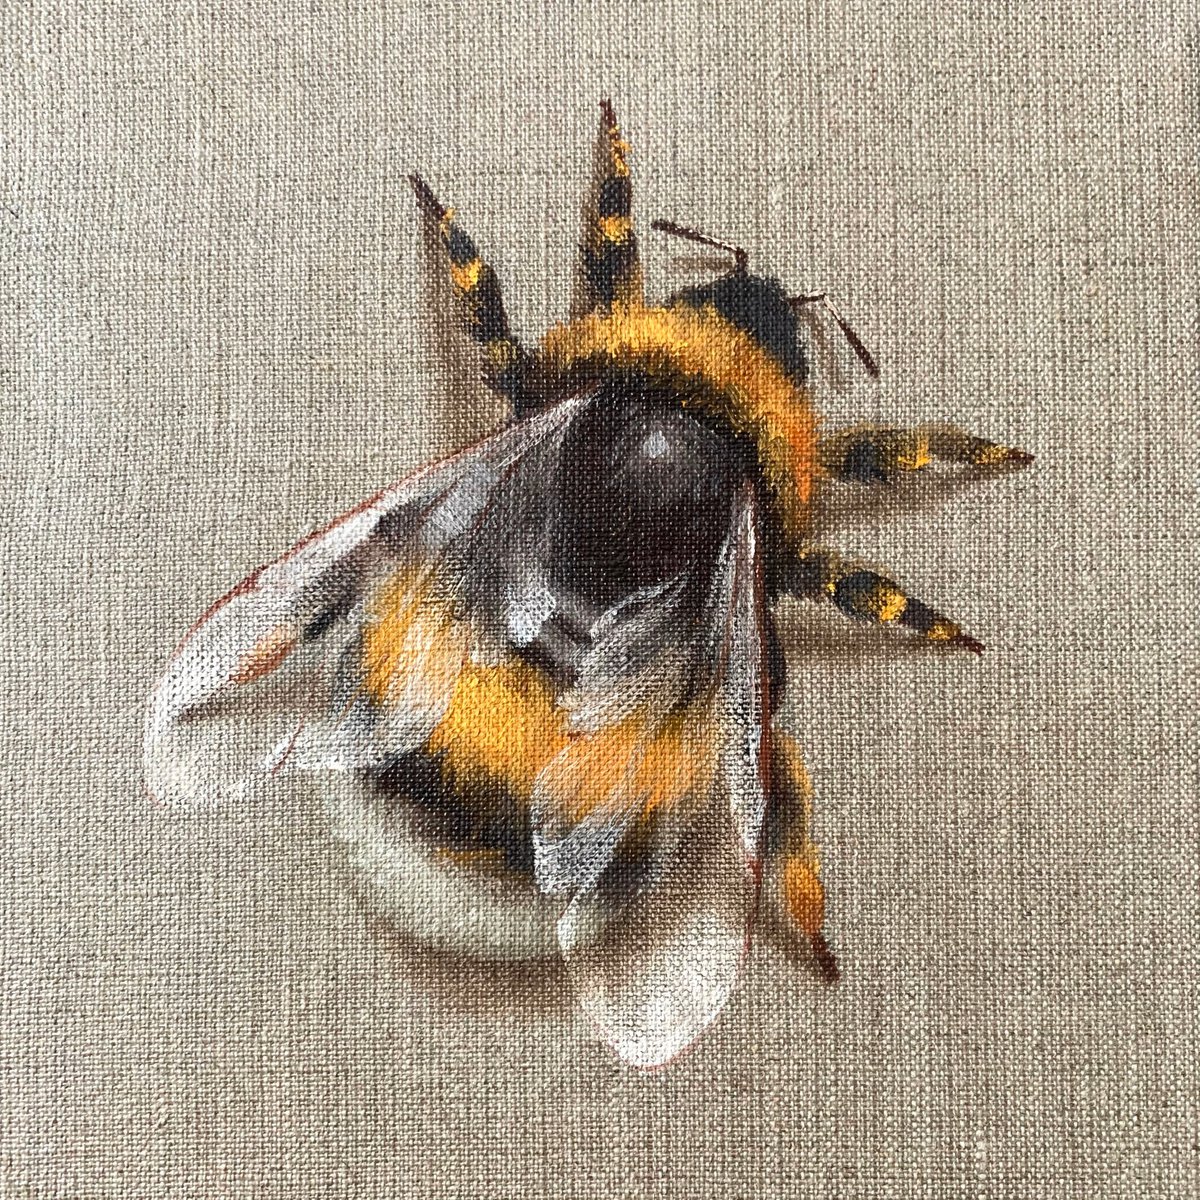  - Impermanent life - � #15 Bumblebee by Alina Marsovna